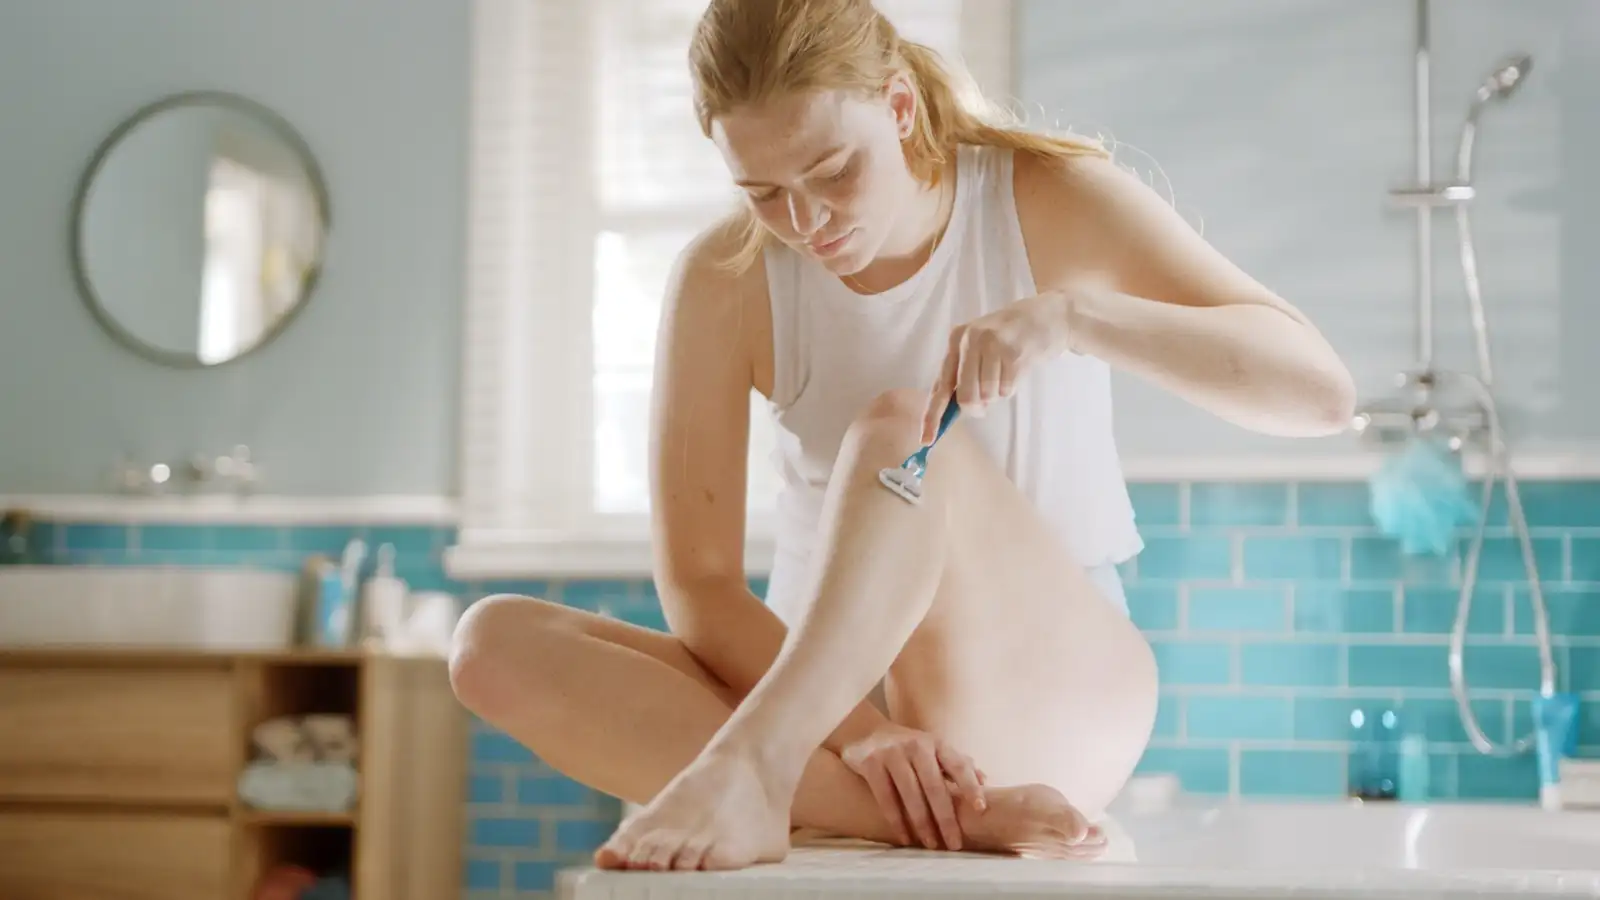 Femme se rasant la jambe avec un rasoir dans une salle de bain